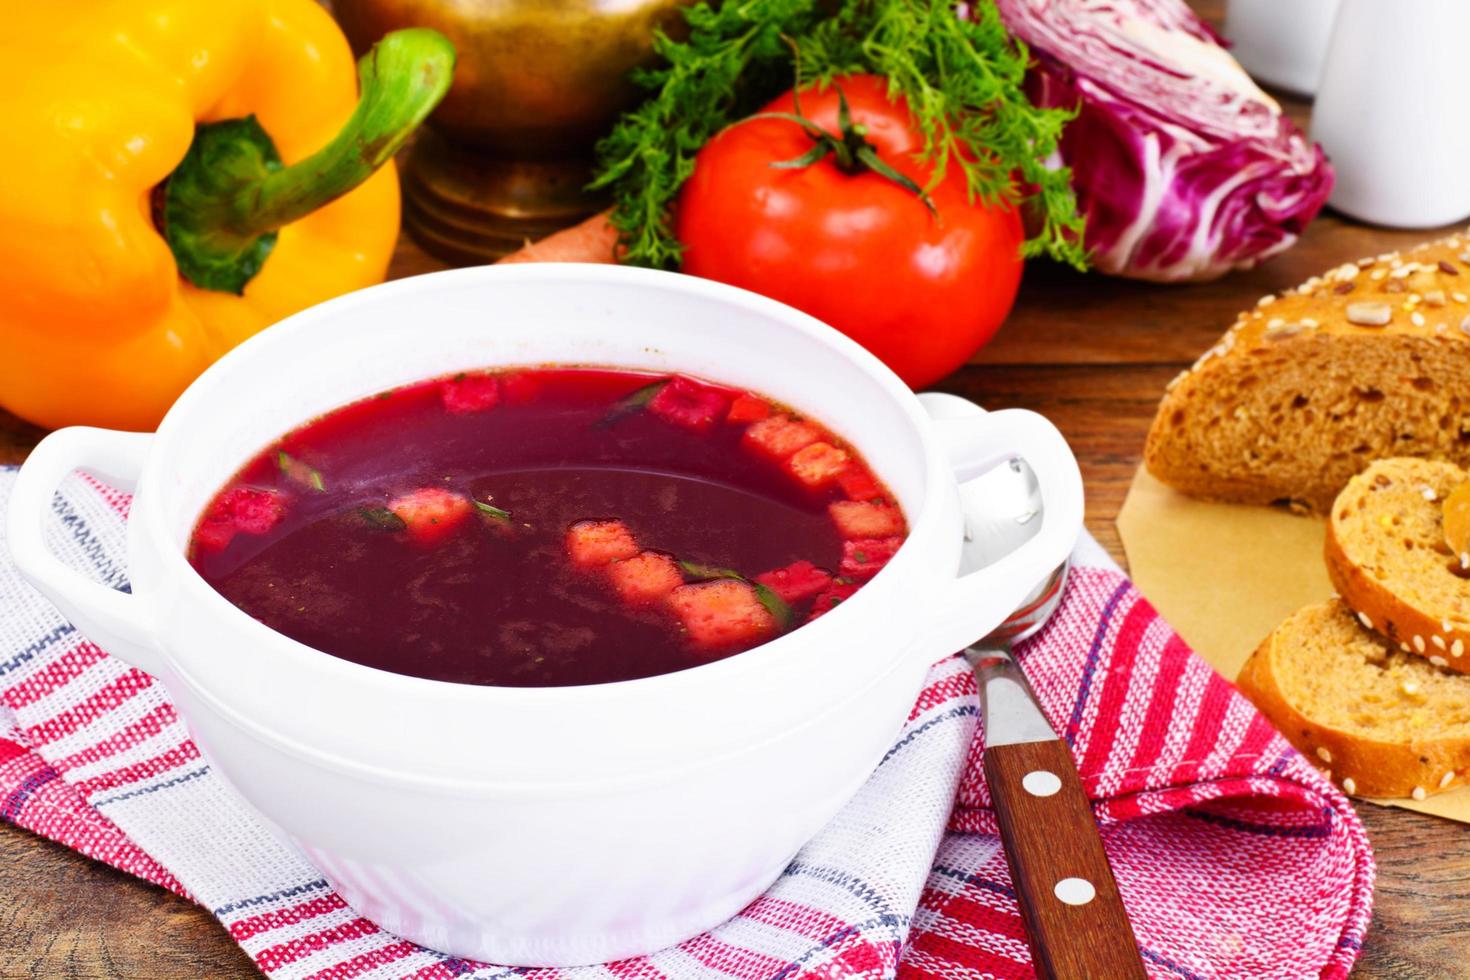 gezond eten. soep met bieten, tomaat en groenten foto